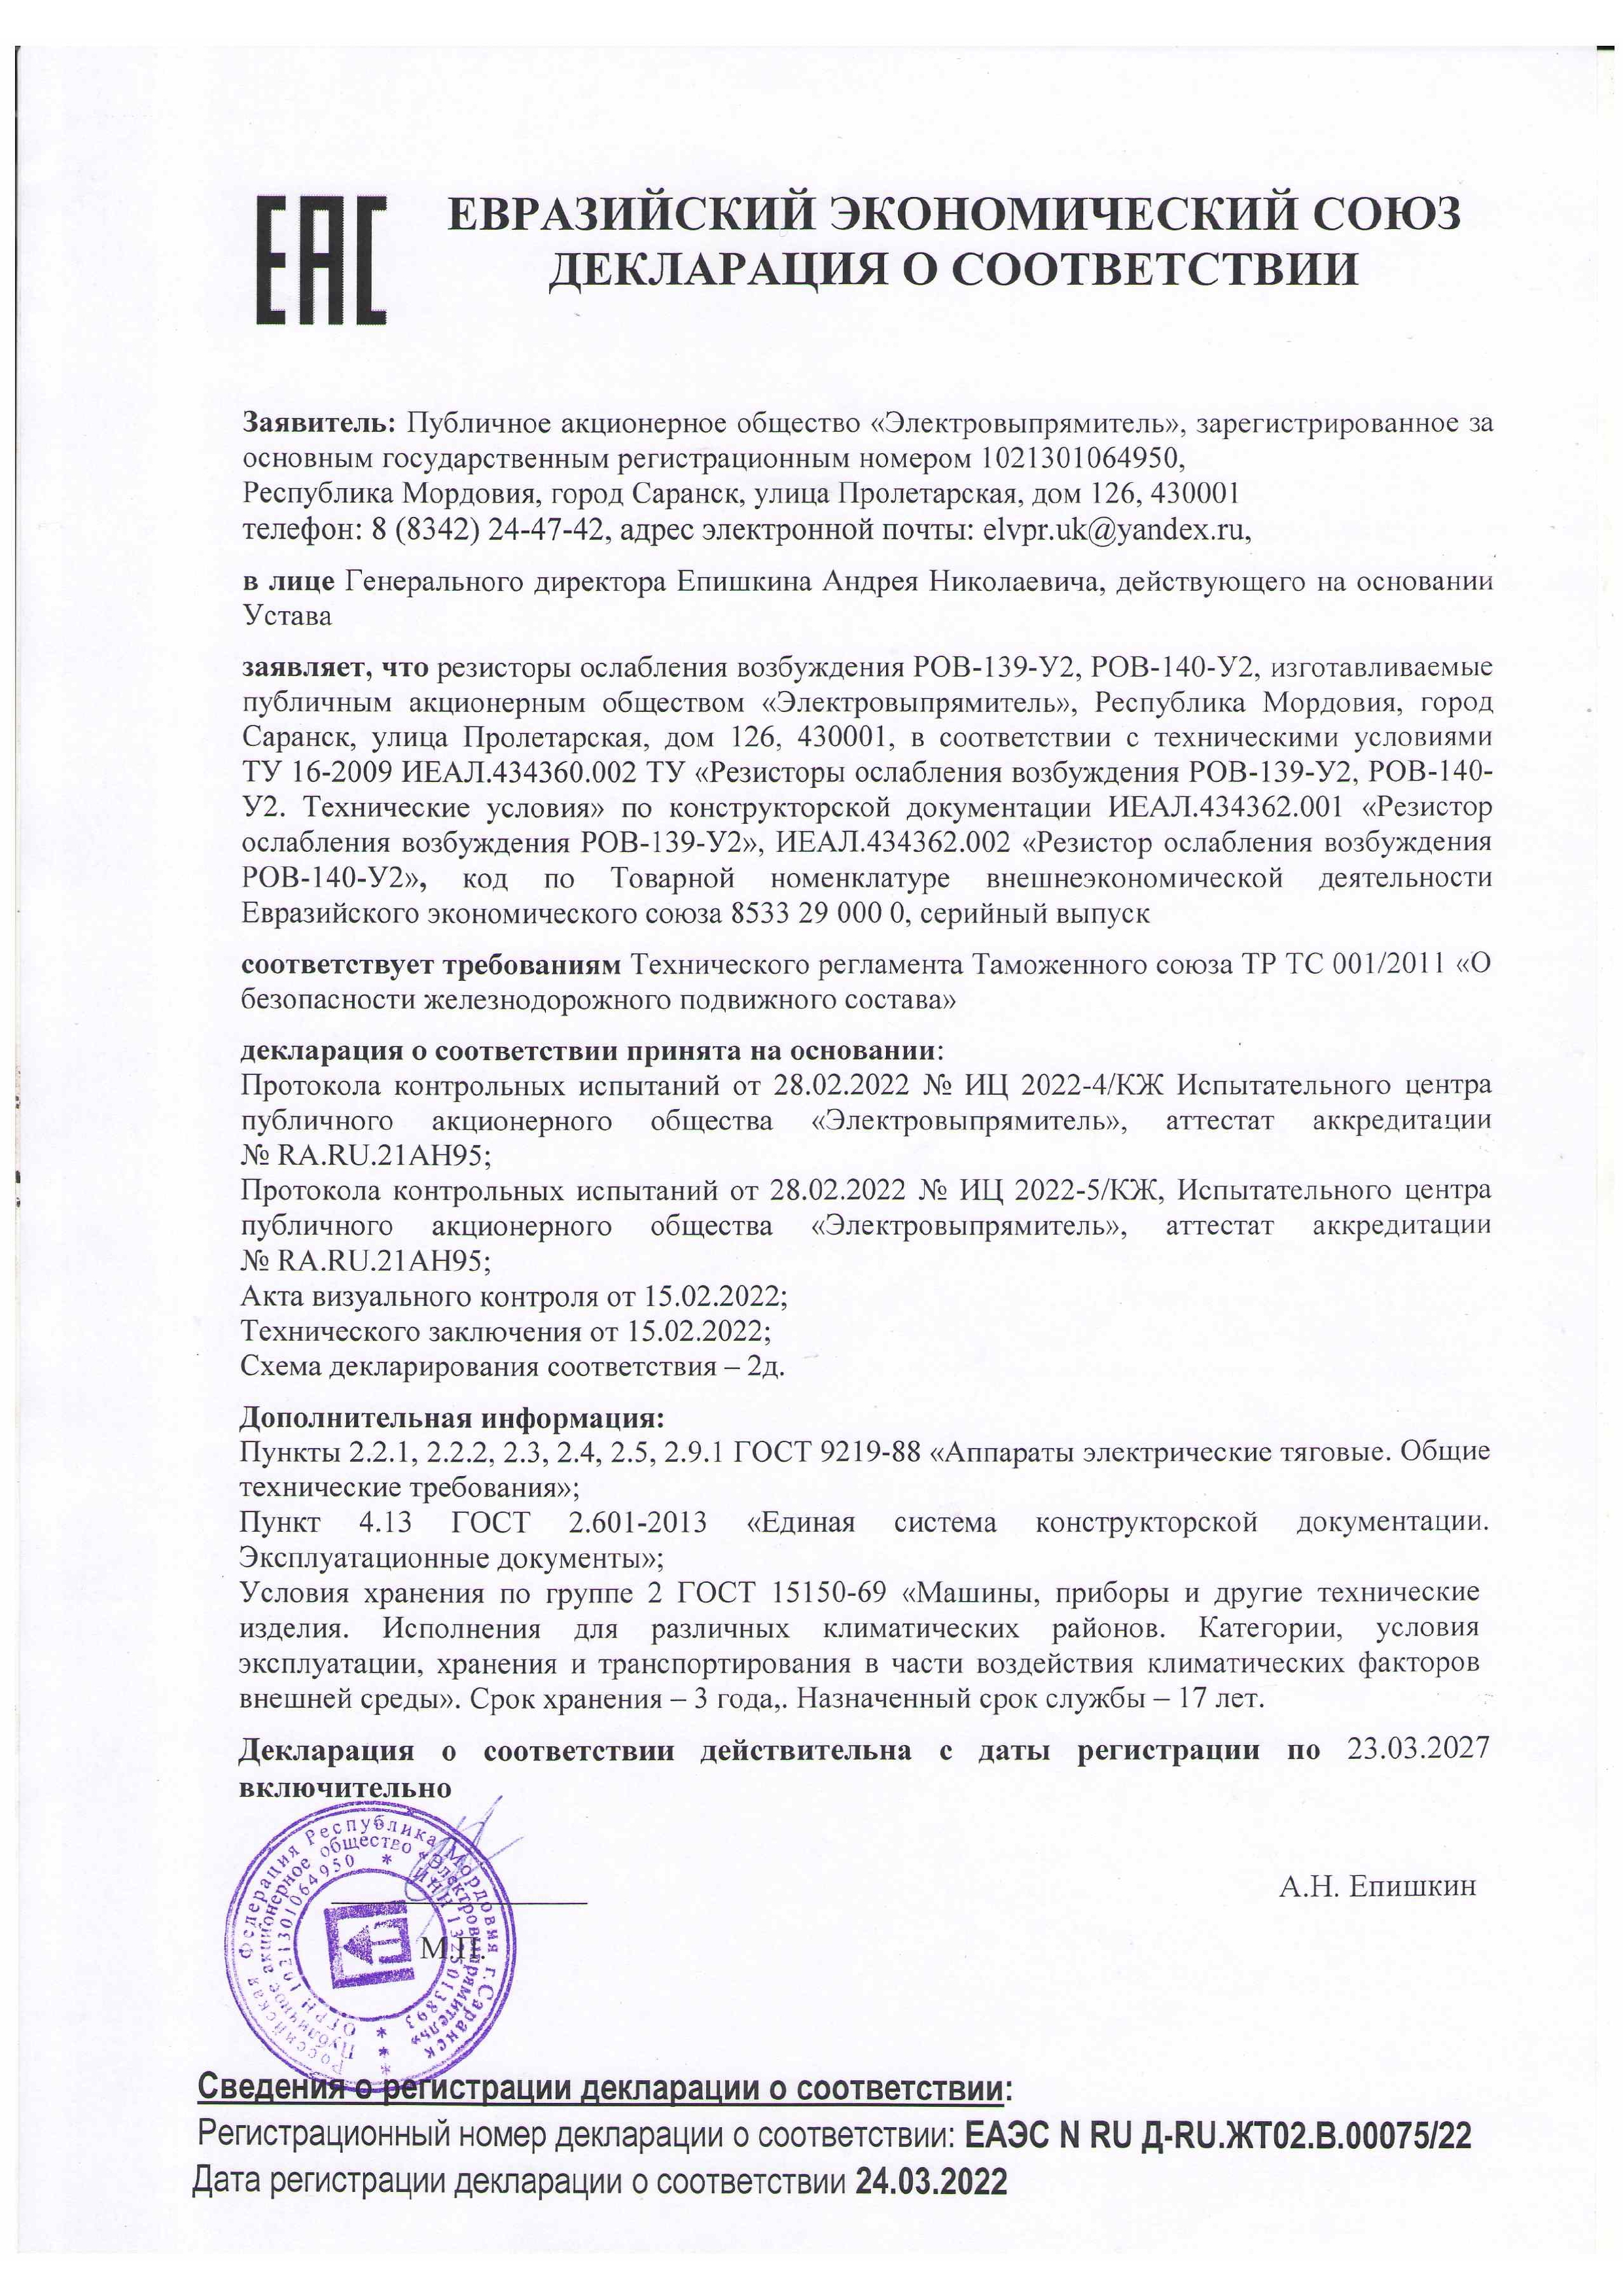 Декларация ЕАС на резисторы ослабления возбуждения РОВ-139-У2, РОВ-140-У2